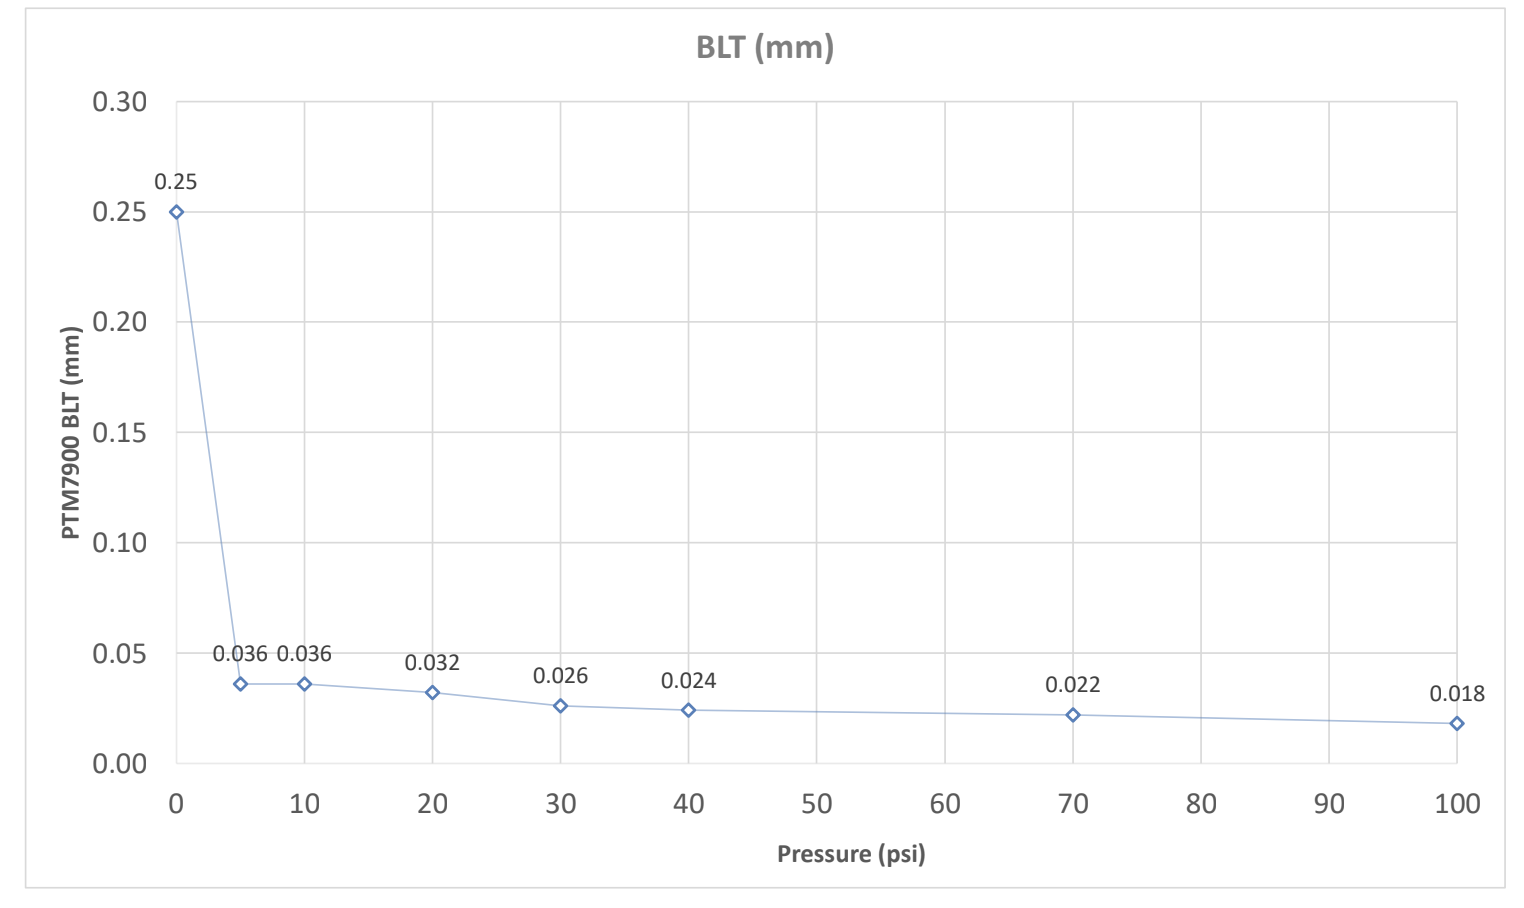 PTM 7900 BLT vs Pressure Curve